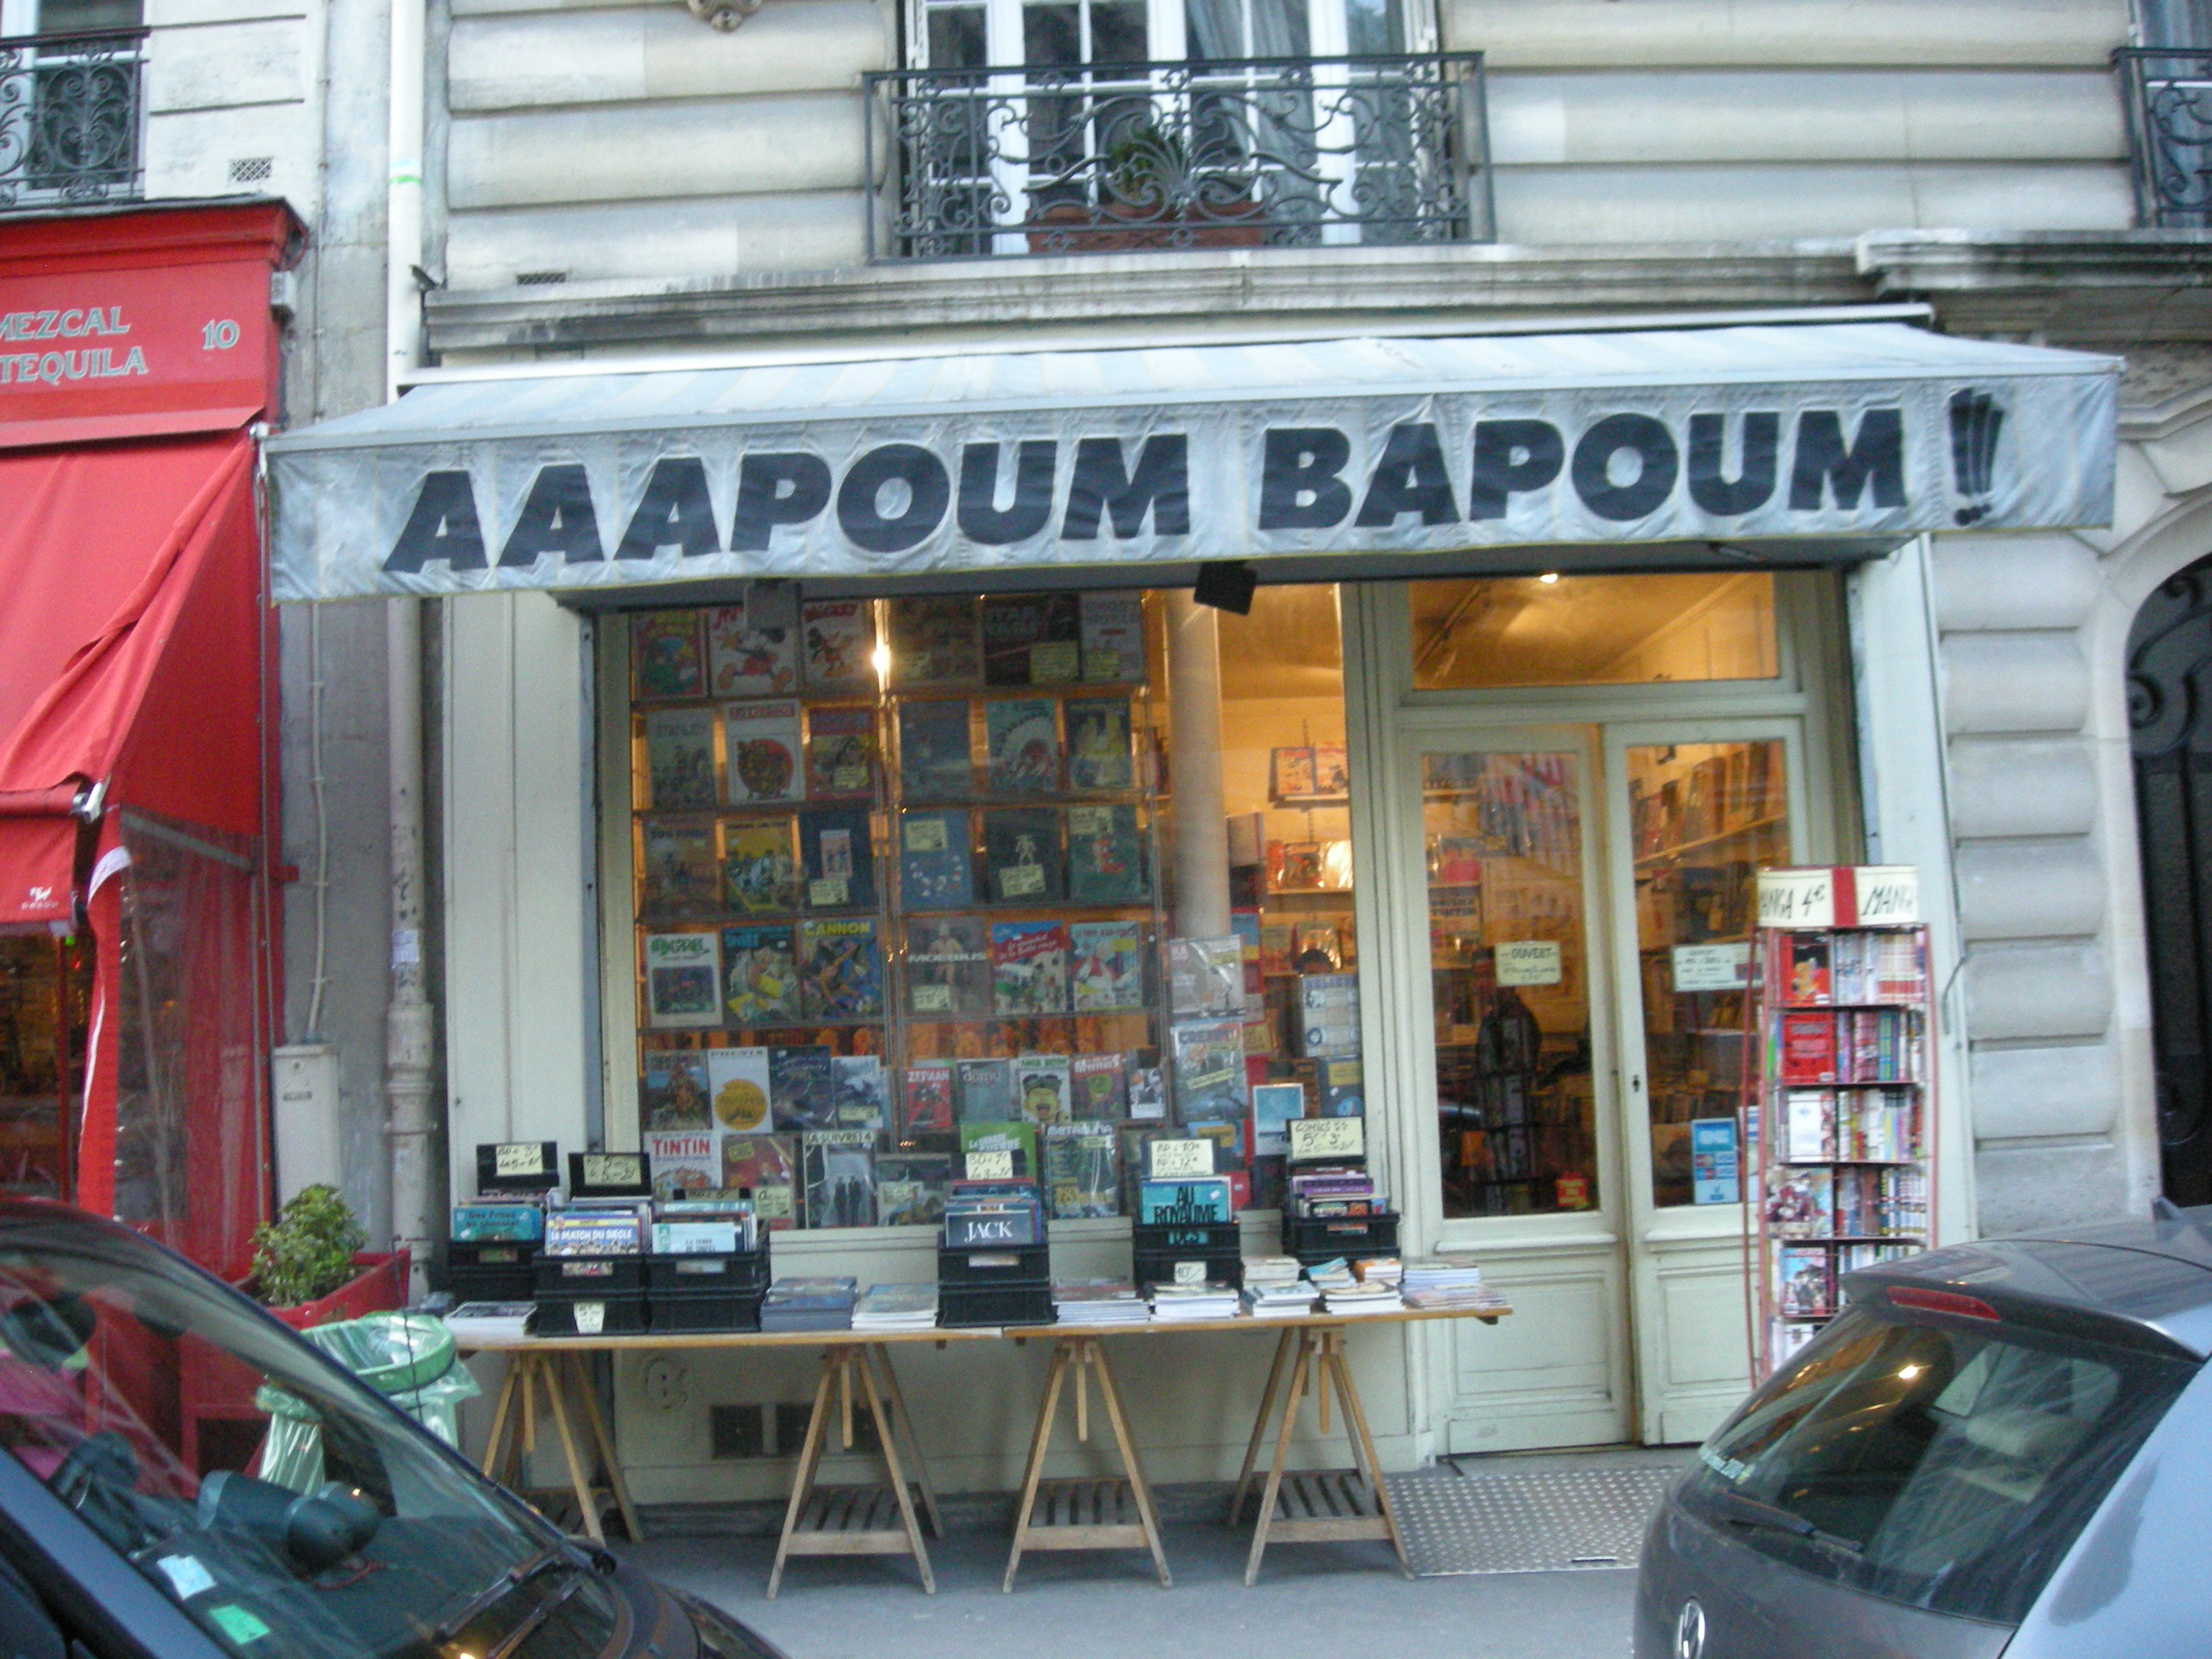 Aaapoum bapoum - Dante